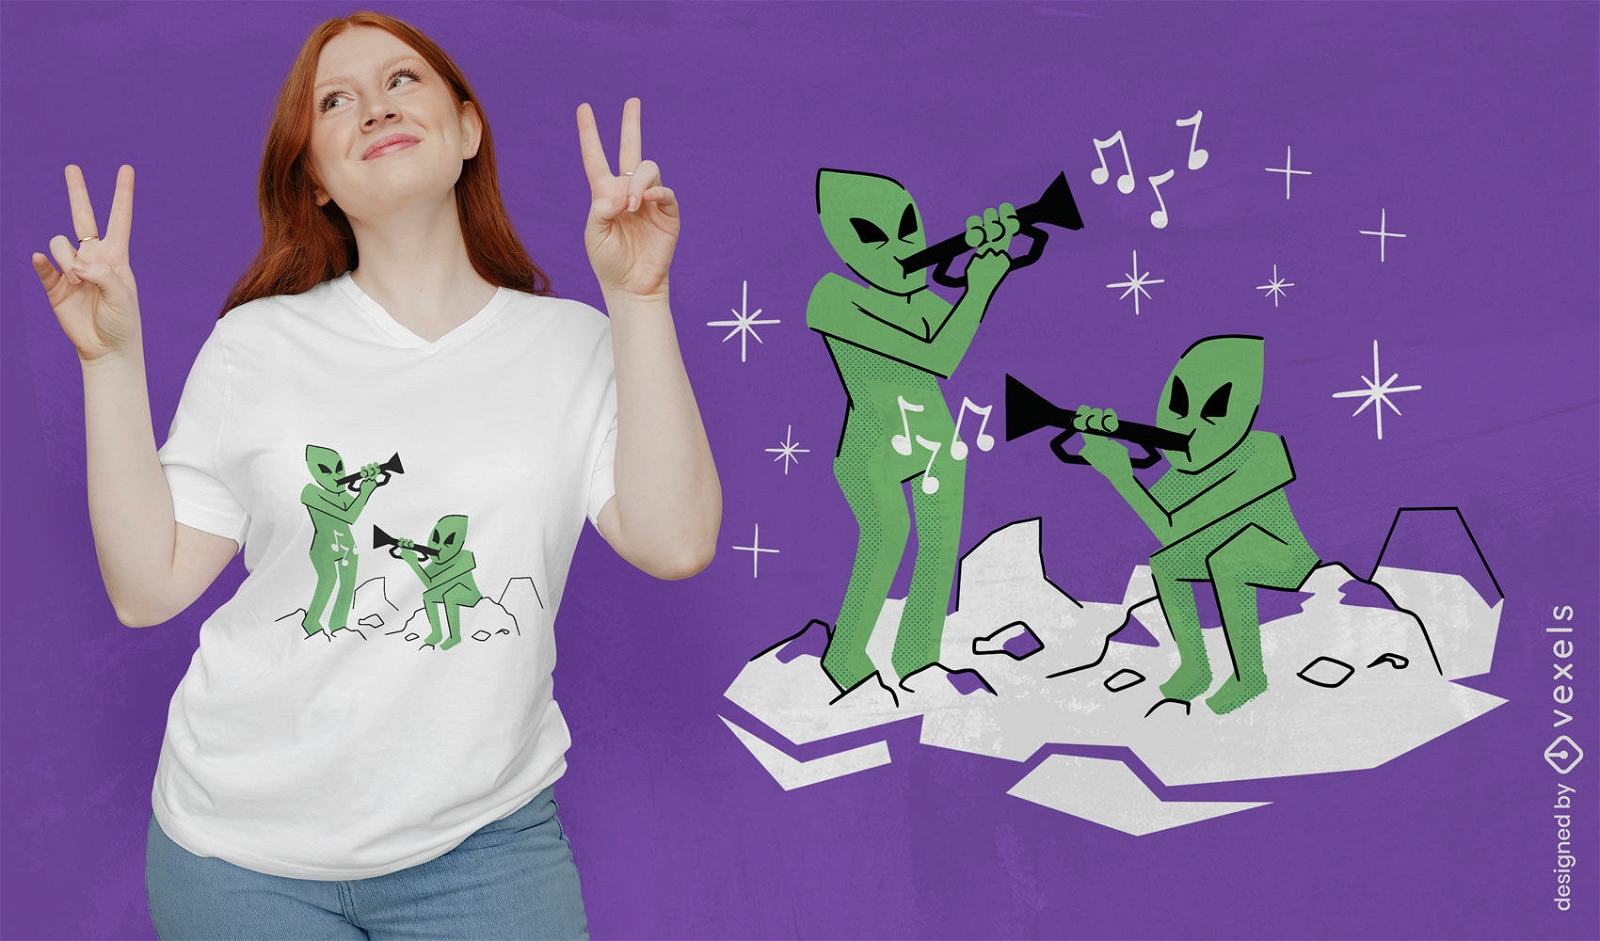 Dise?o de camiseta de extraterrestres tocando trompetas.